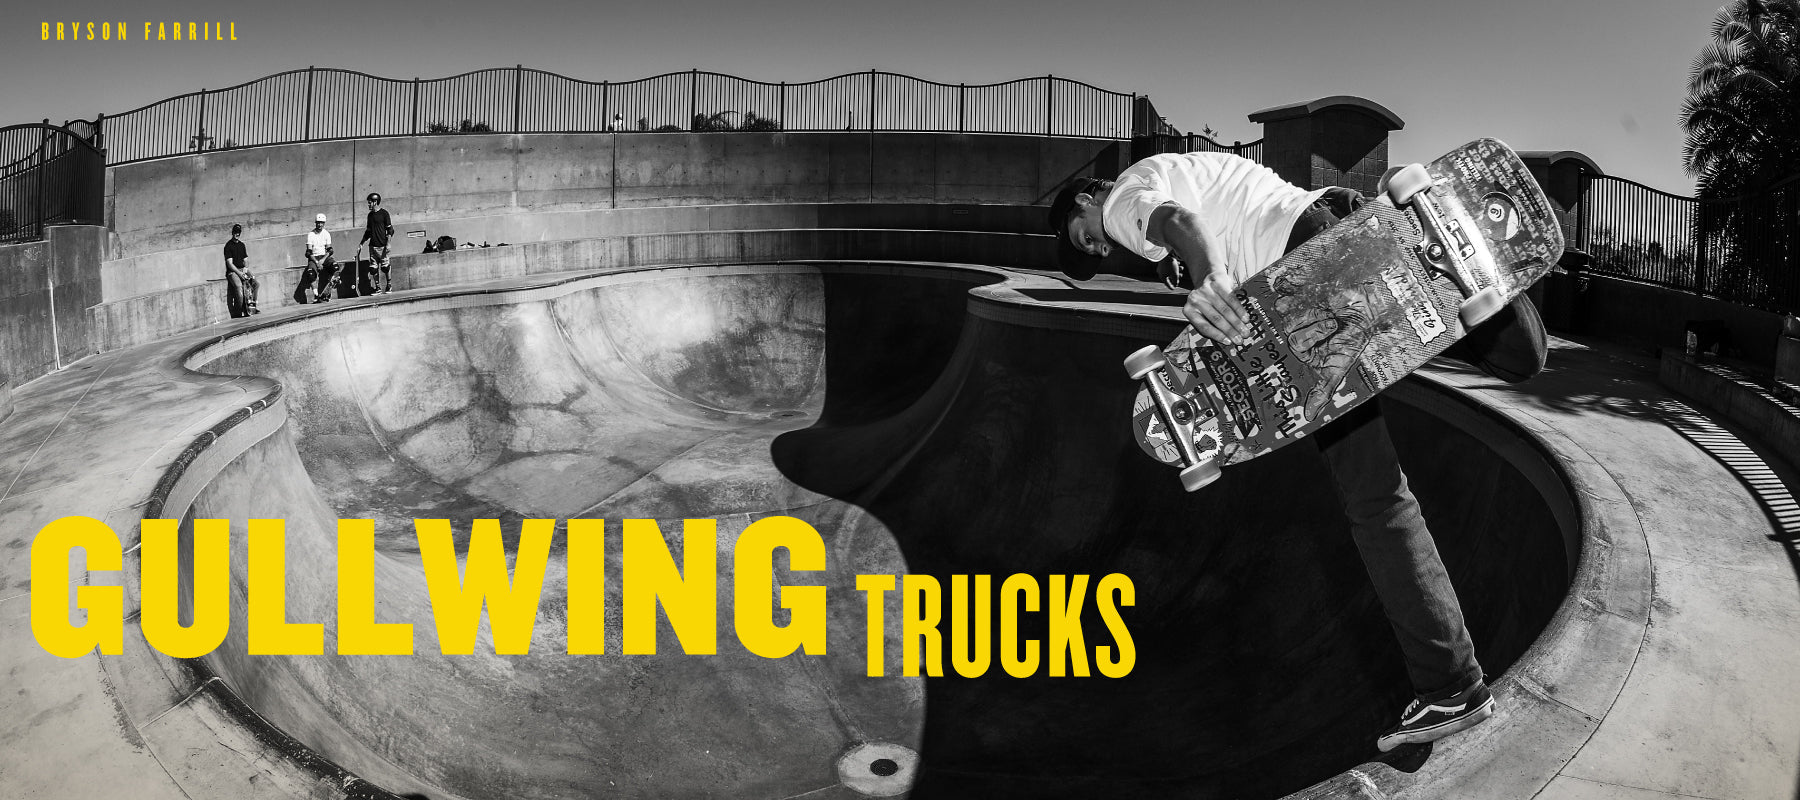 Best Skateboard Trucks for Skating | Sector9 Longboard Trucks | Sector Nine